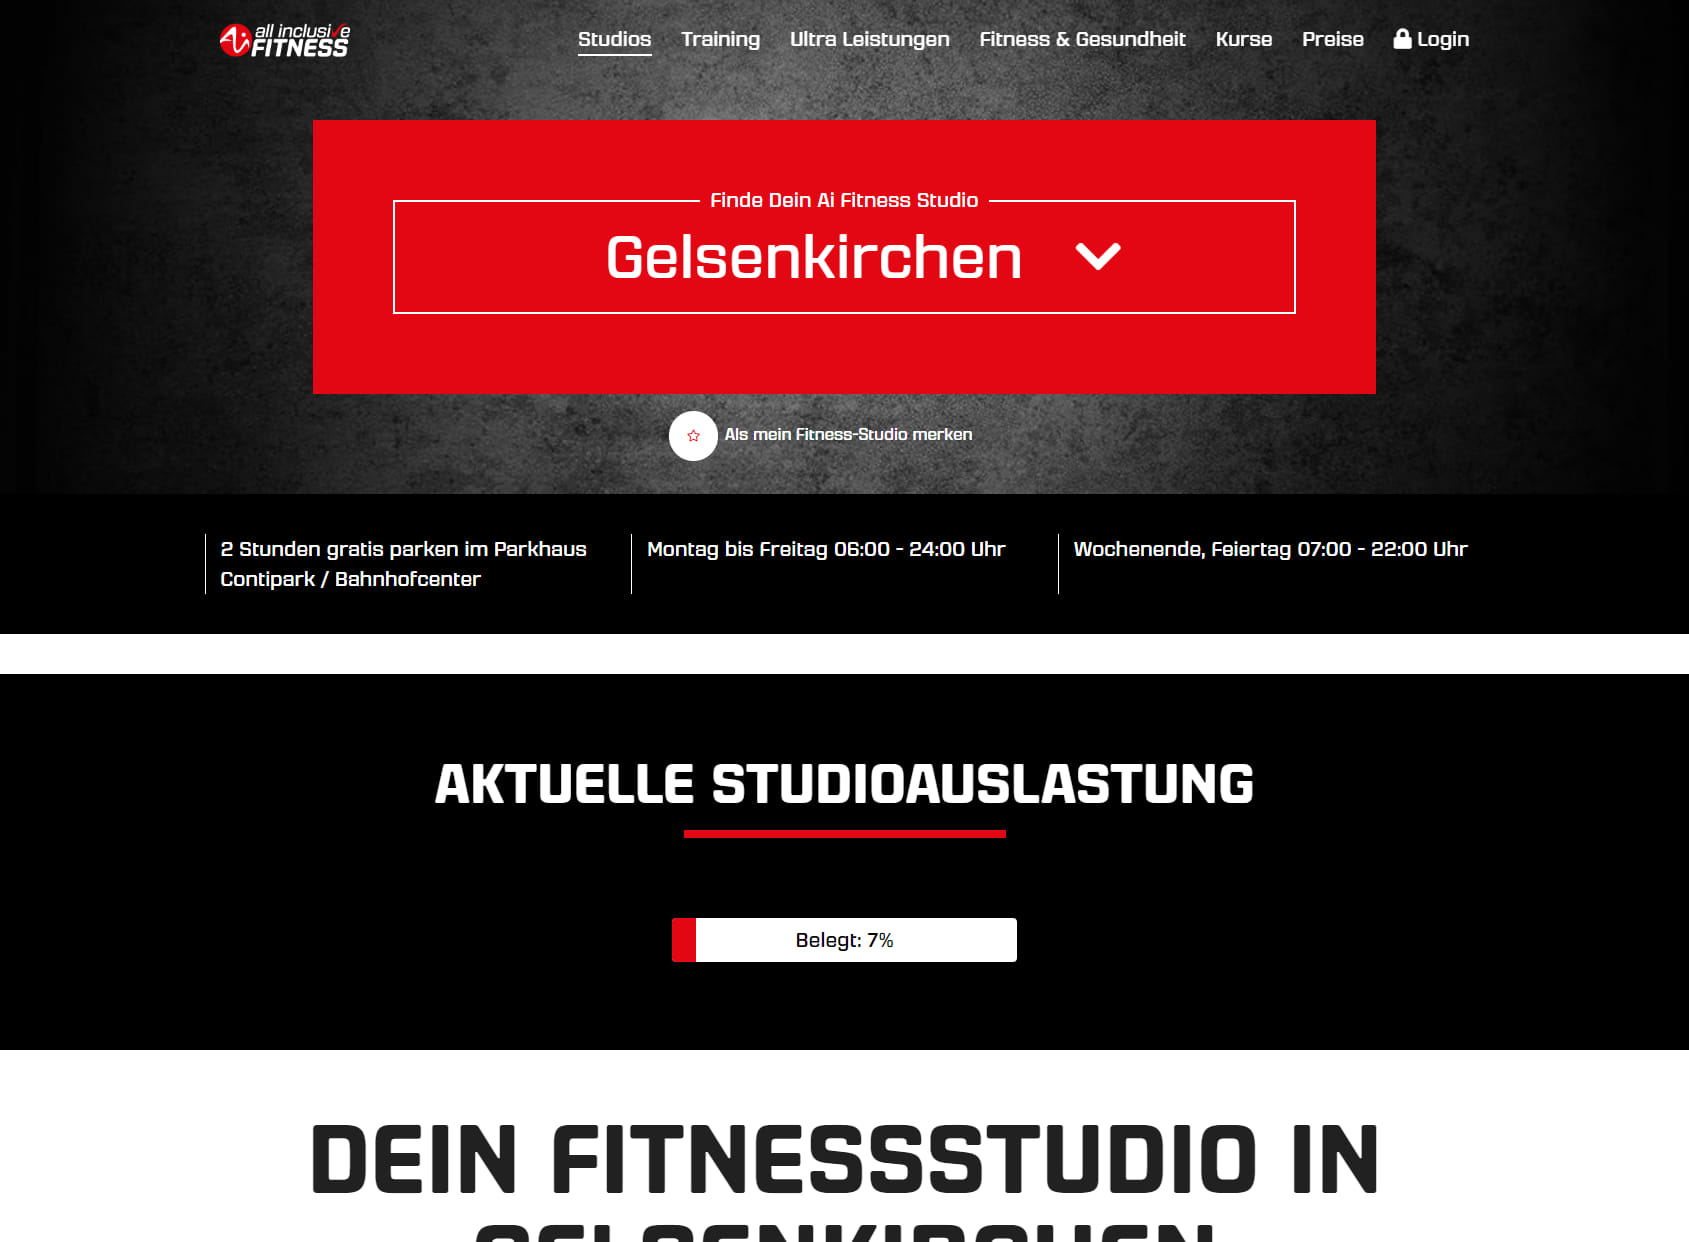 A.I. Fitness Gelsenkirchen